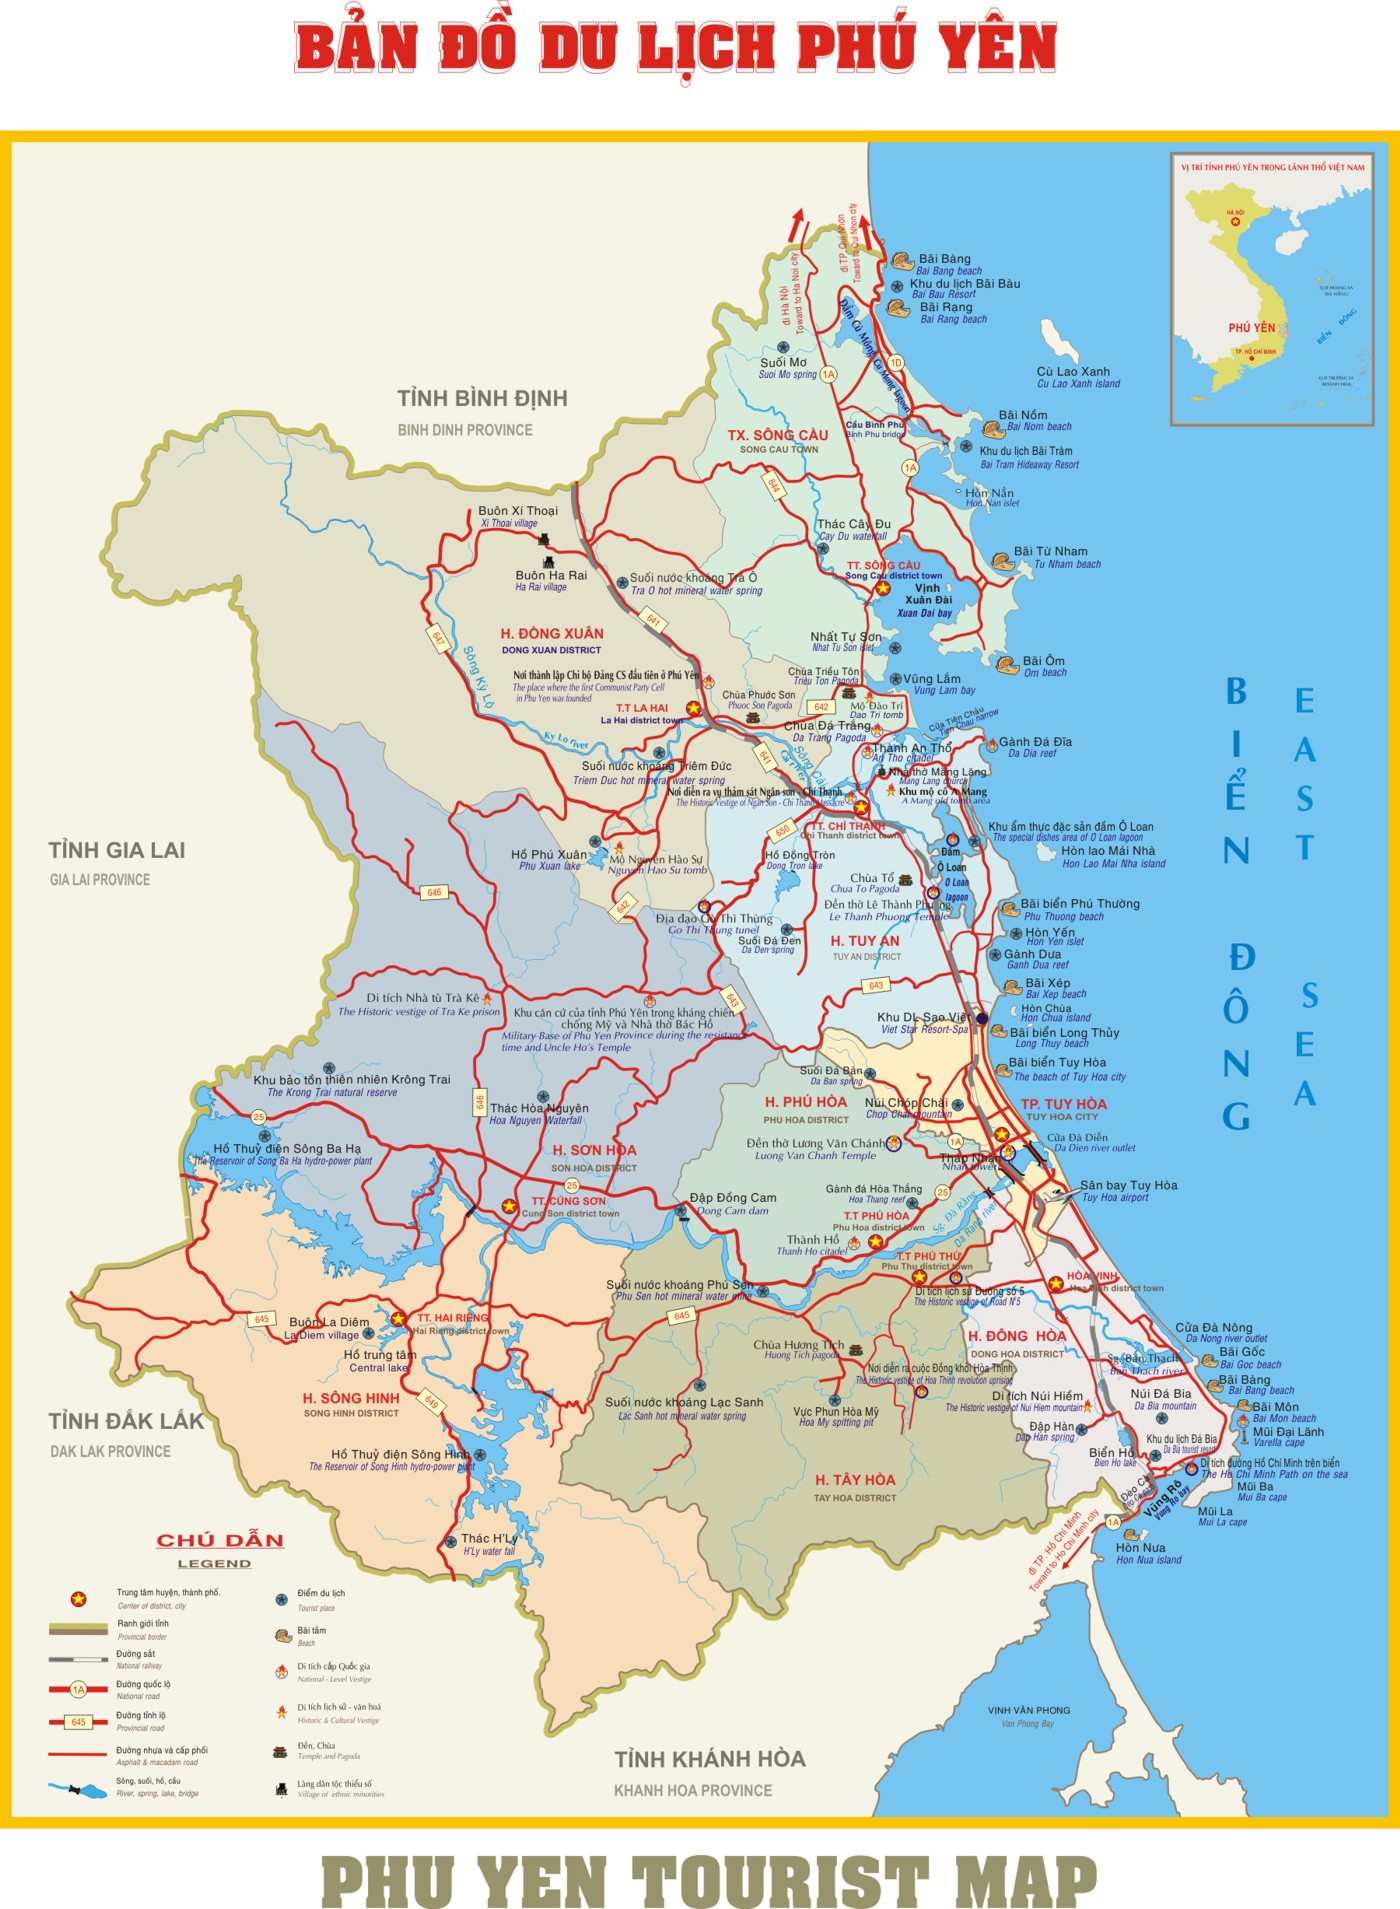 Bản đồ hành chính tỉnh Phú Yên năm 2024: Tỉnh Phú Yên đang trên đà phát triển không ngừng, hình thành một bản đồ hành chính tỉnh năm 2024 đầy đủ và chi tiết sẽ giúp cho mọi người dễ dàng nắm bắt được toàn cảnh đất nước và sự phát triển của tỉnh nhà mình.